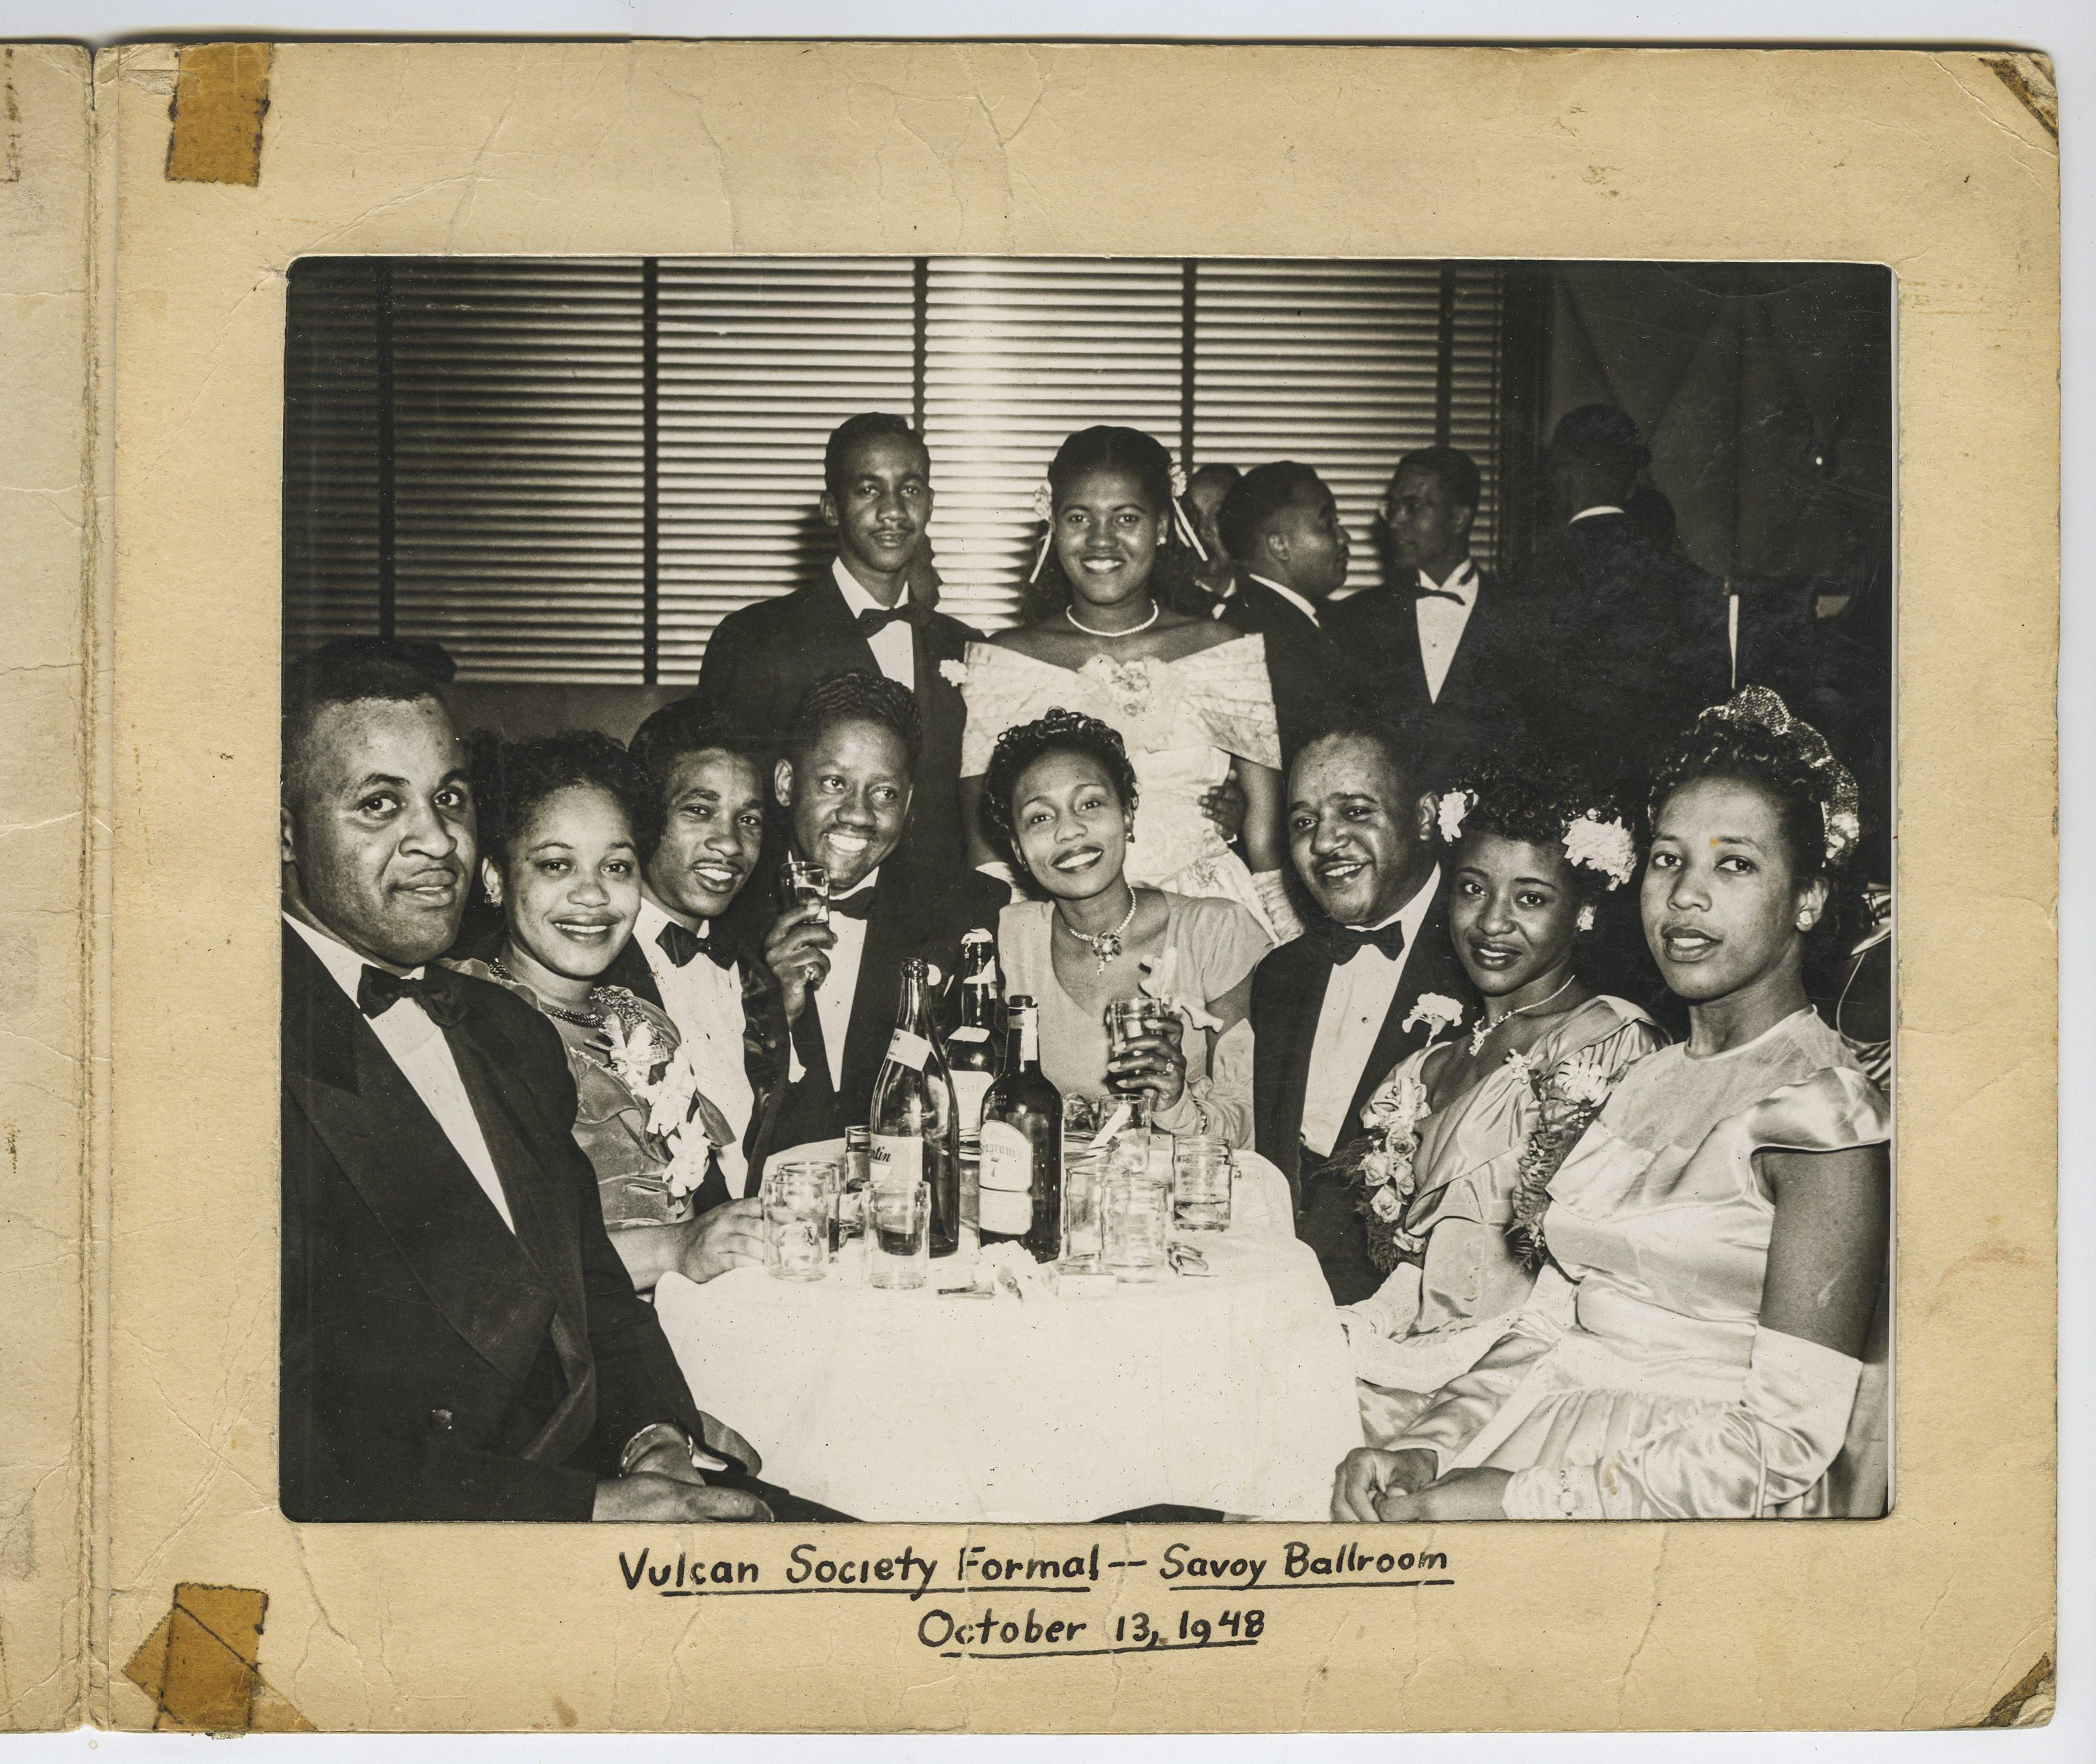 Vulcan Society Formal - Savoy Ballroom, October 13, 1948.